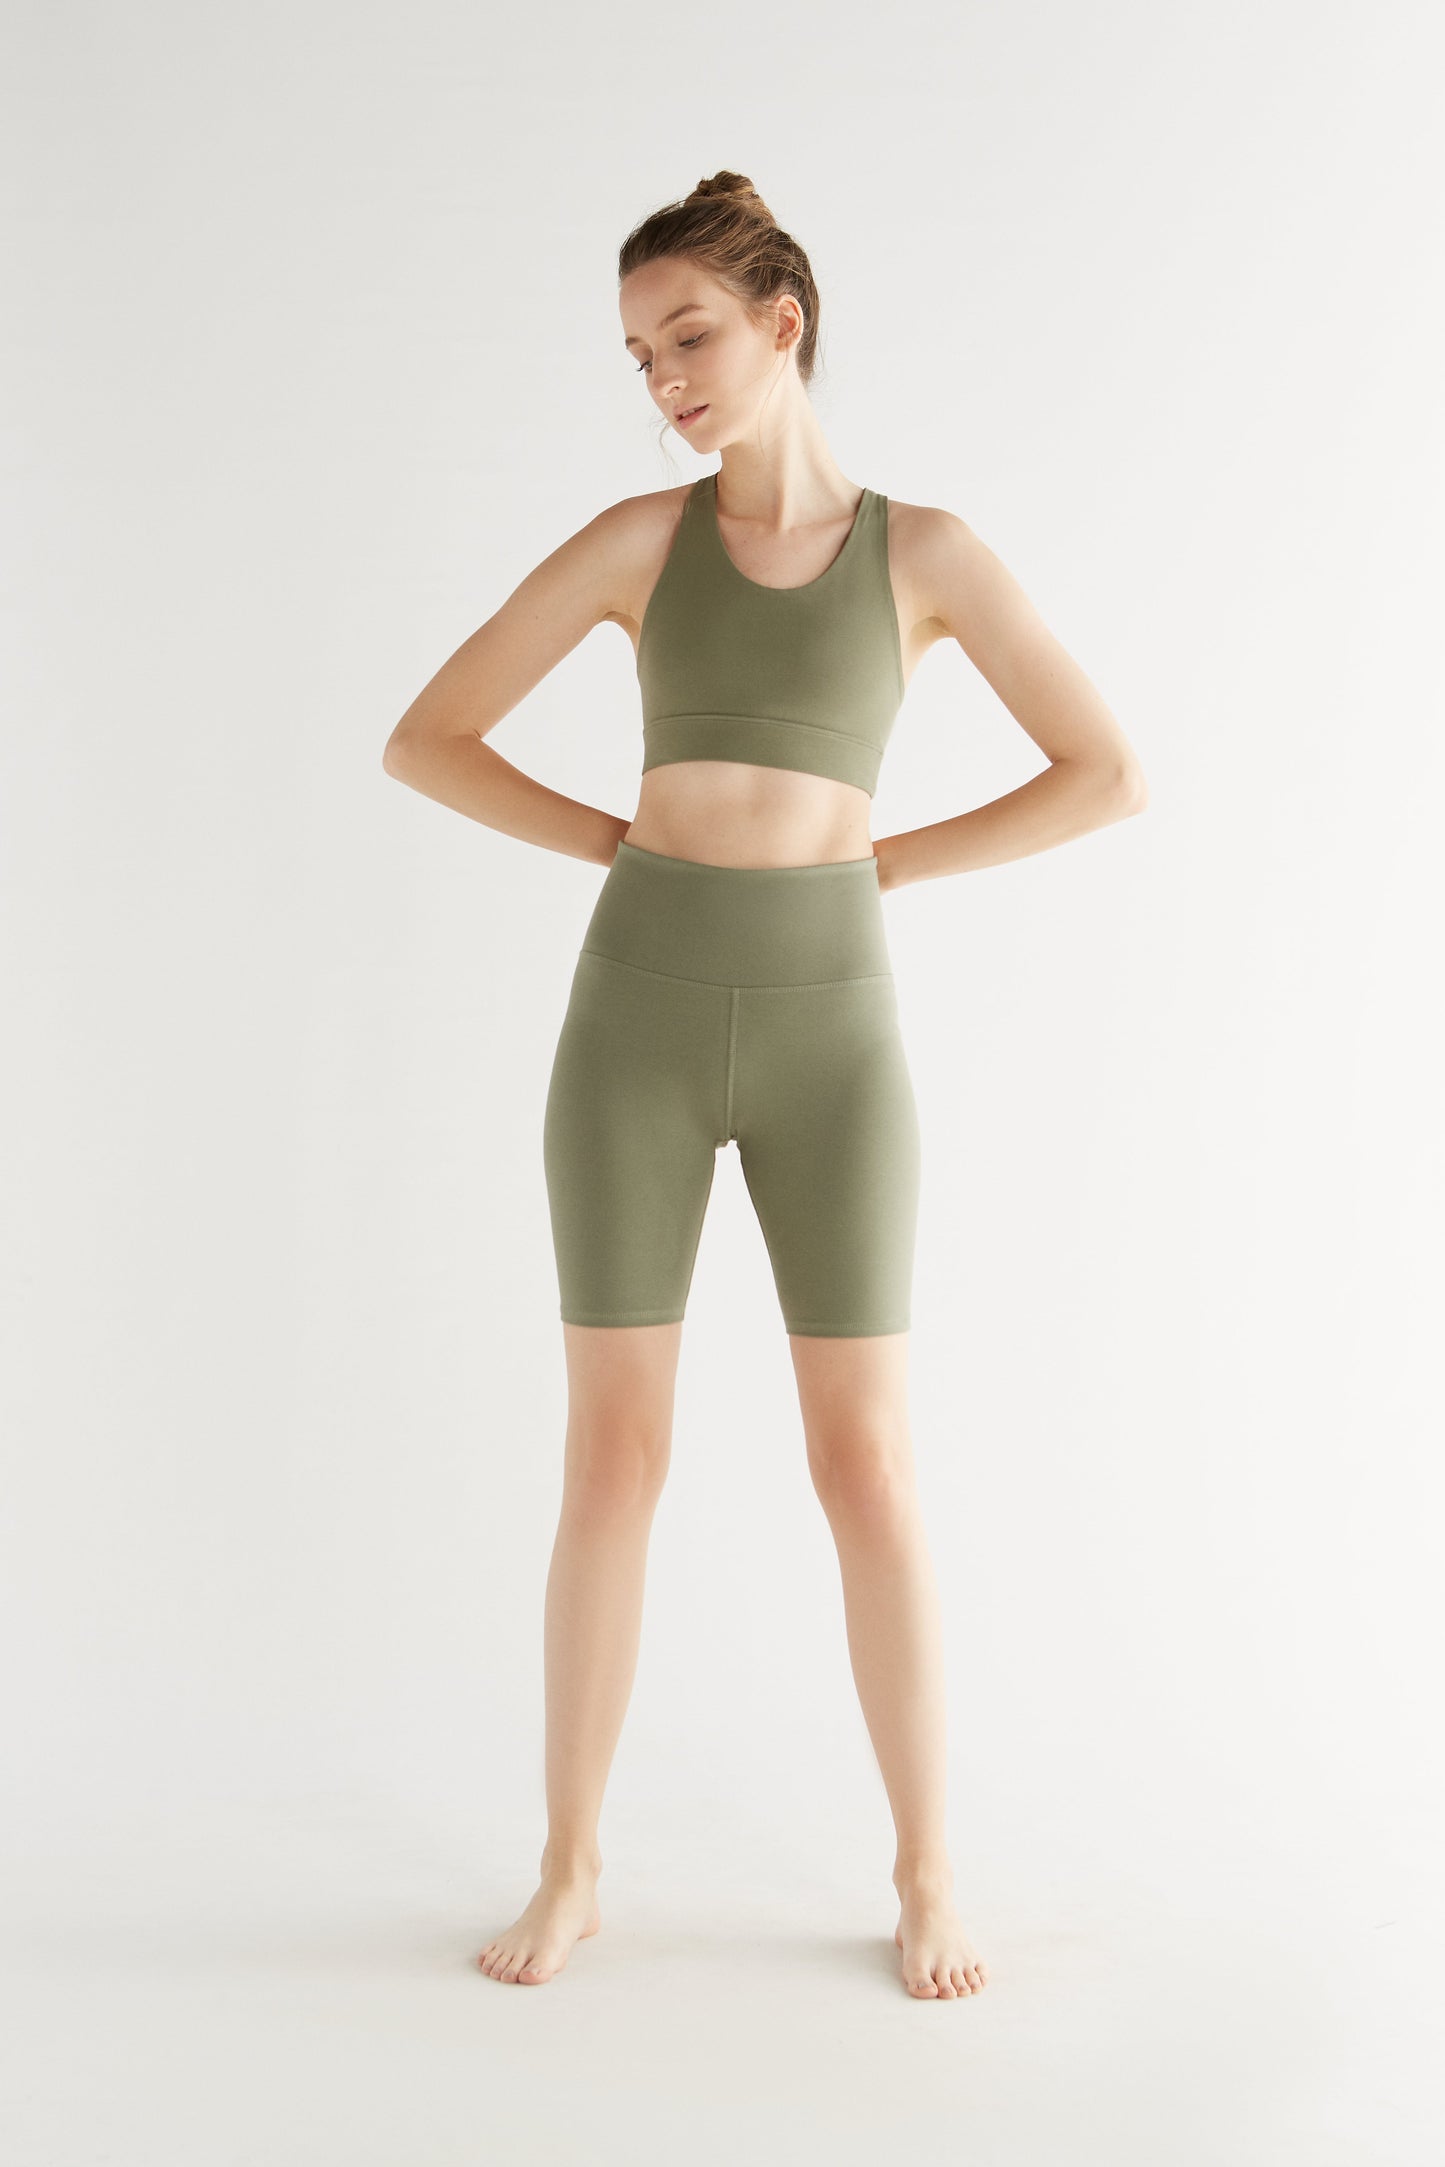 T1331-05 | Women Fit Shorts - Light Green